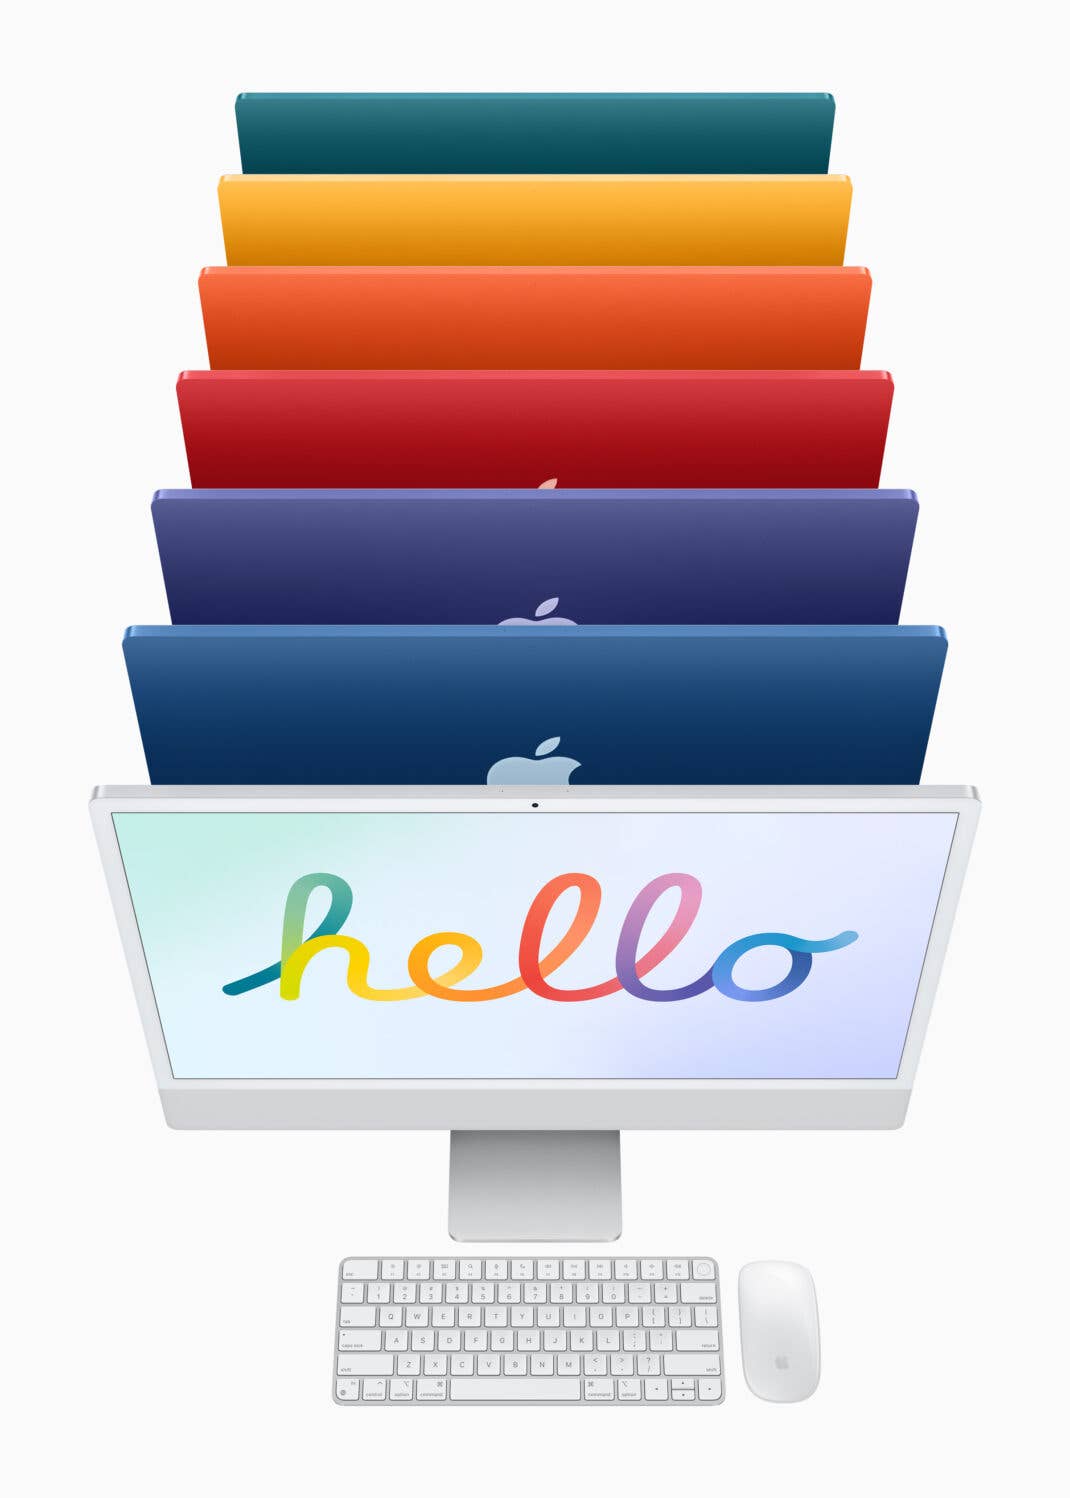 Der neue iMac in 7 Farben